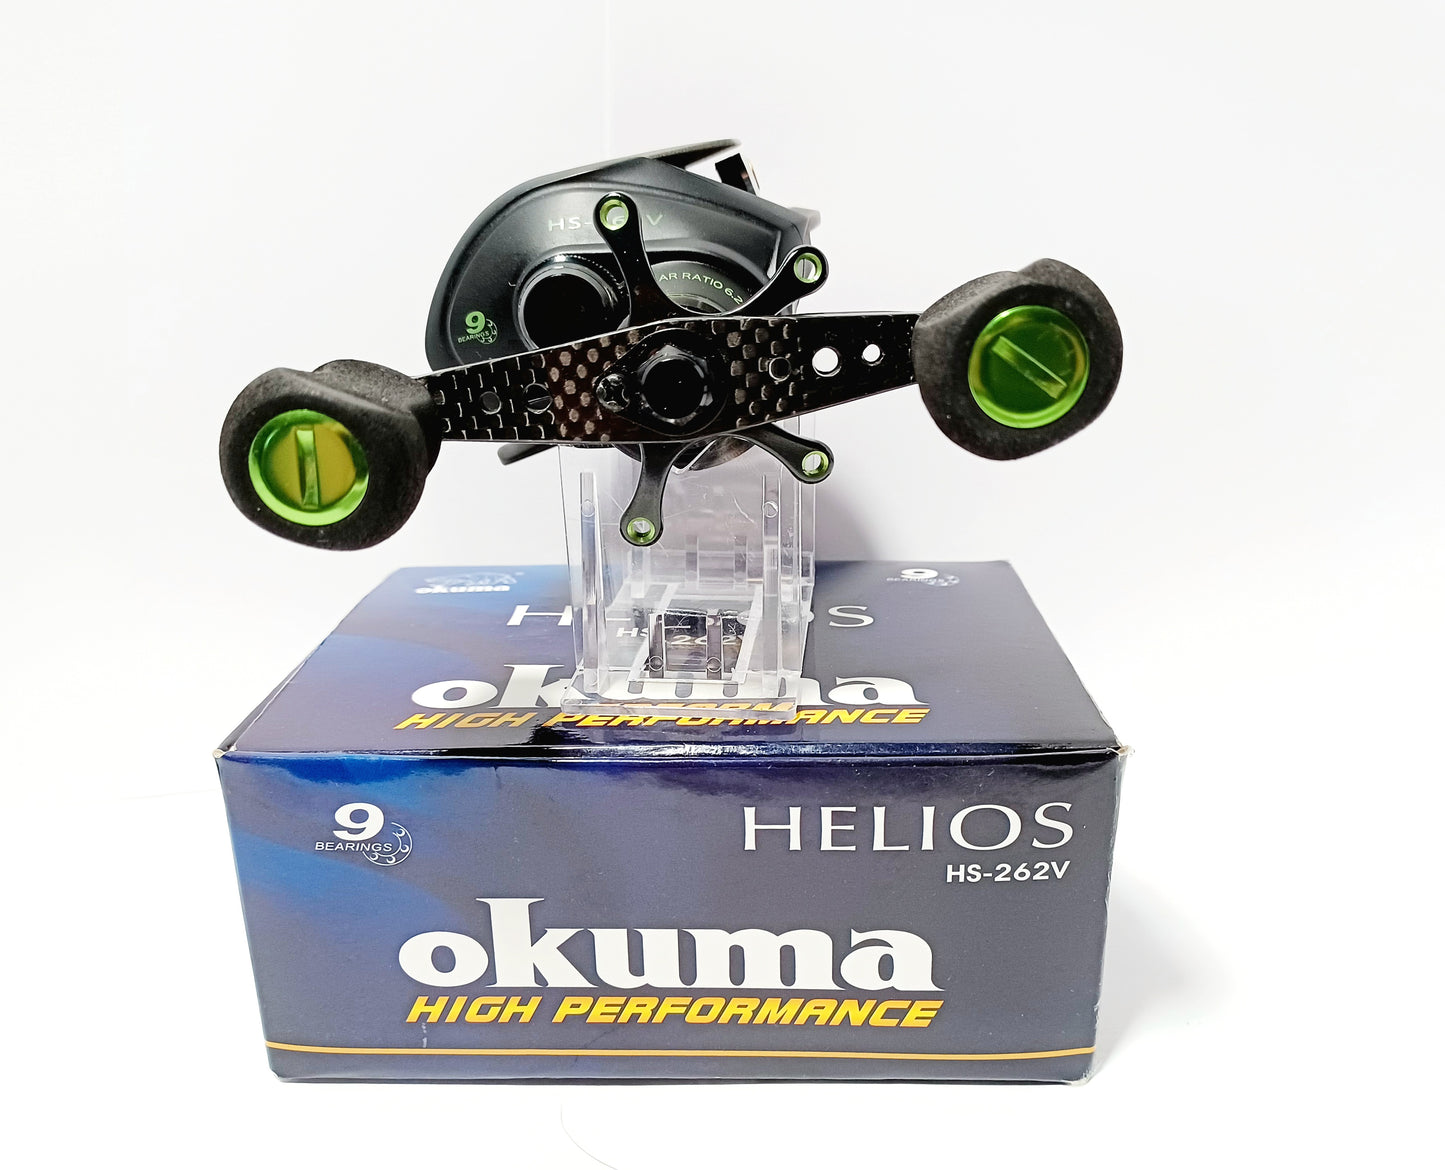 Okuma HELIOS low profile 6.2:1 ratio RH retrieval baitcaster HS-262V